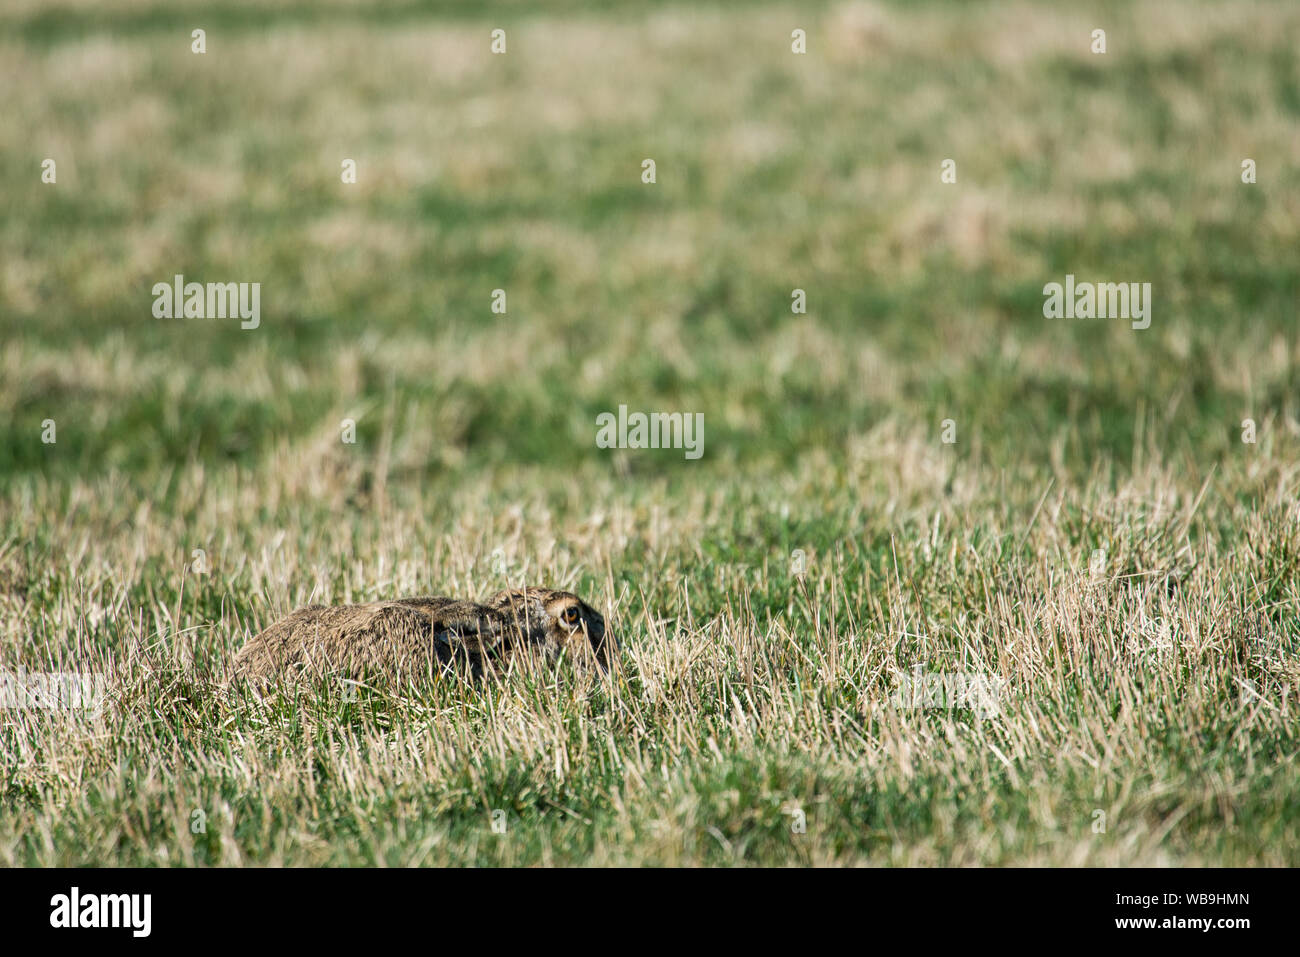 Europäische hase Lepus europaeus Ausblenden von Raubtieren im Gras Stockfoto